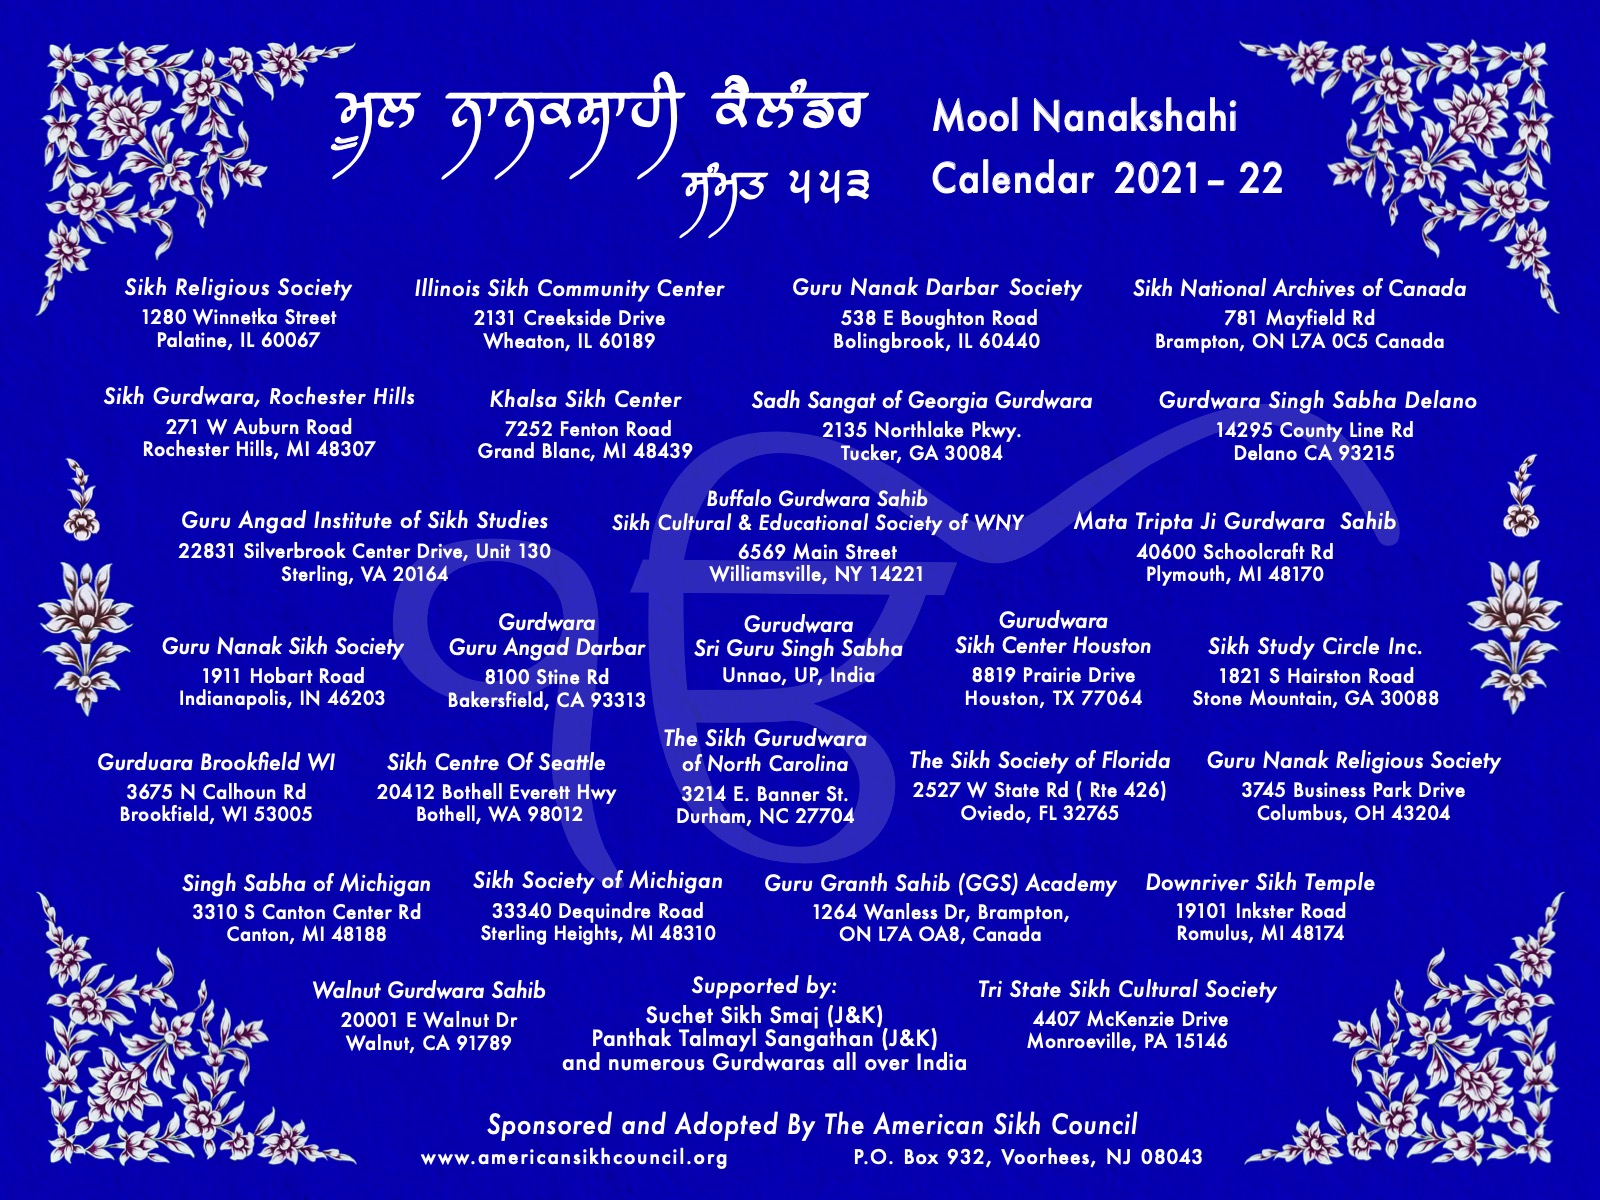 mool-nanakshahi-calendar-the-sikh-calendar-based-on-gurbani-sikh-history-facts-and-science